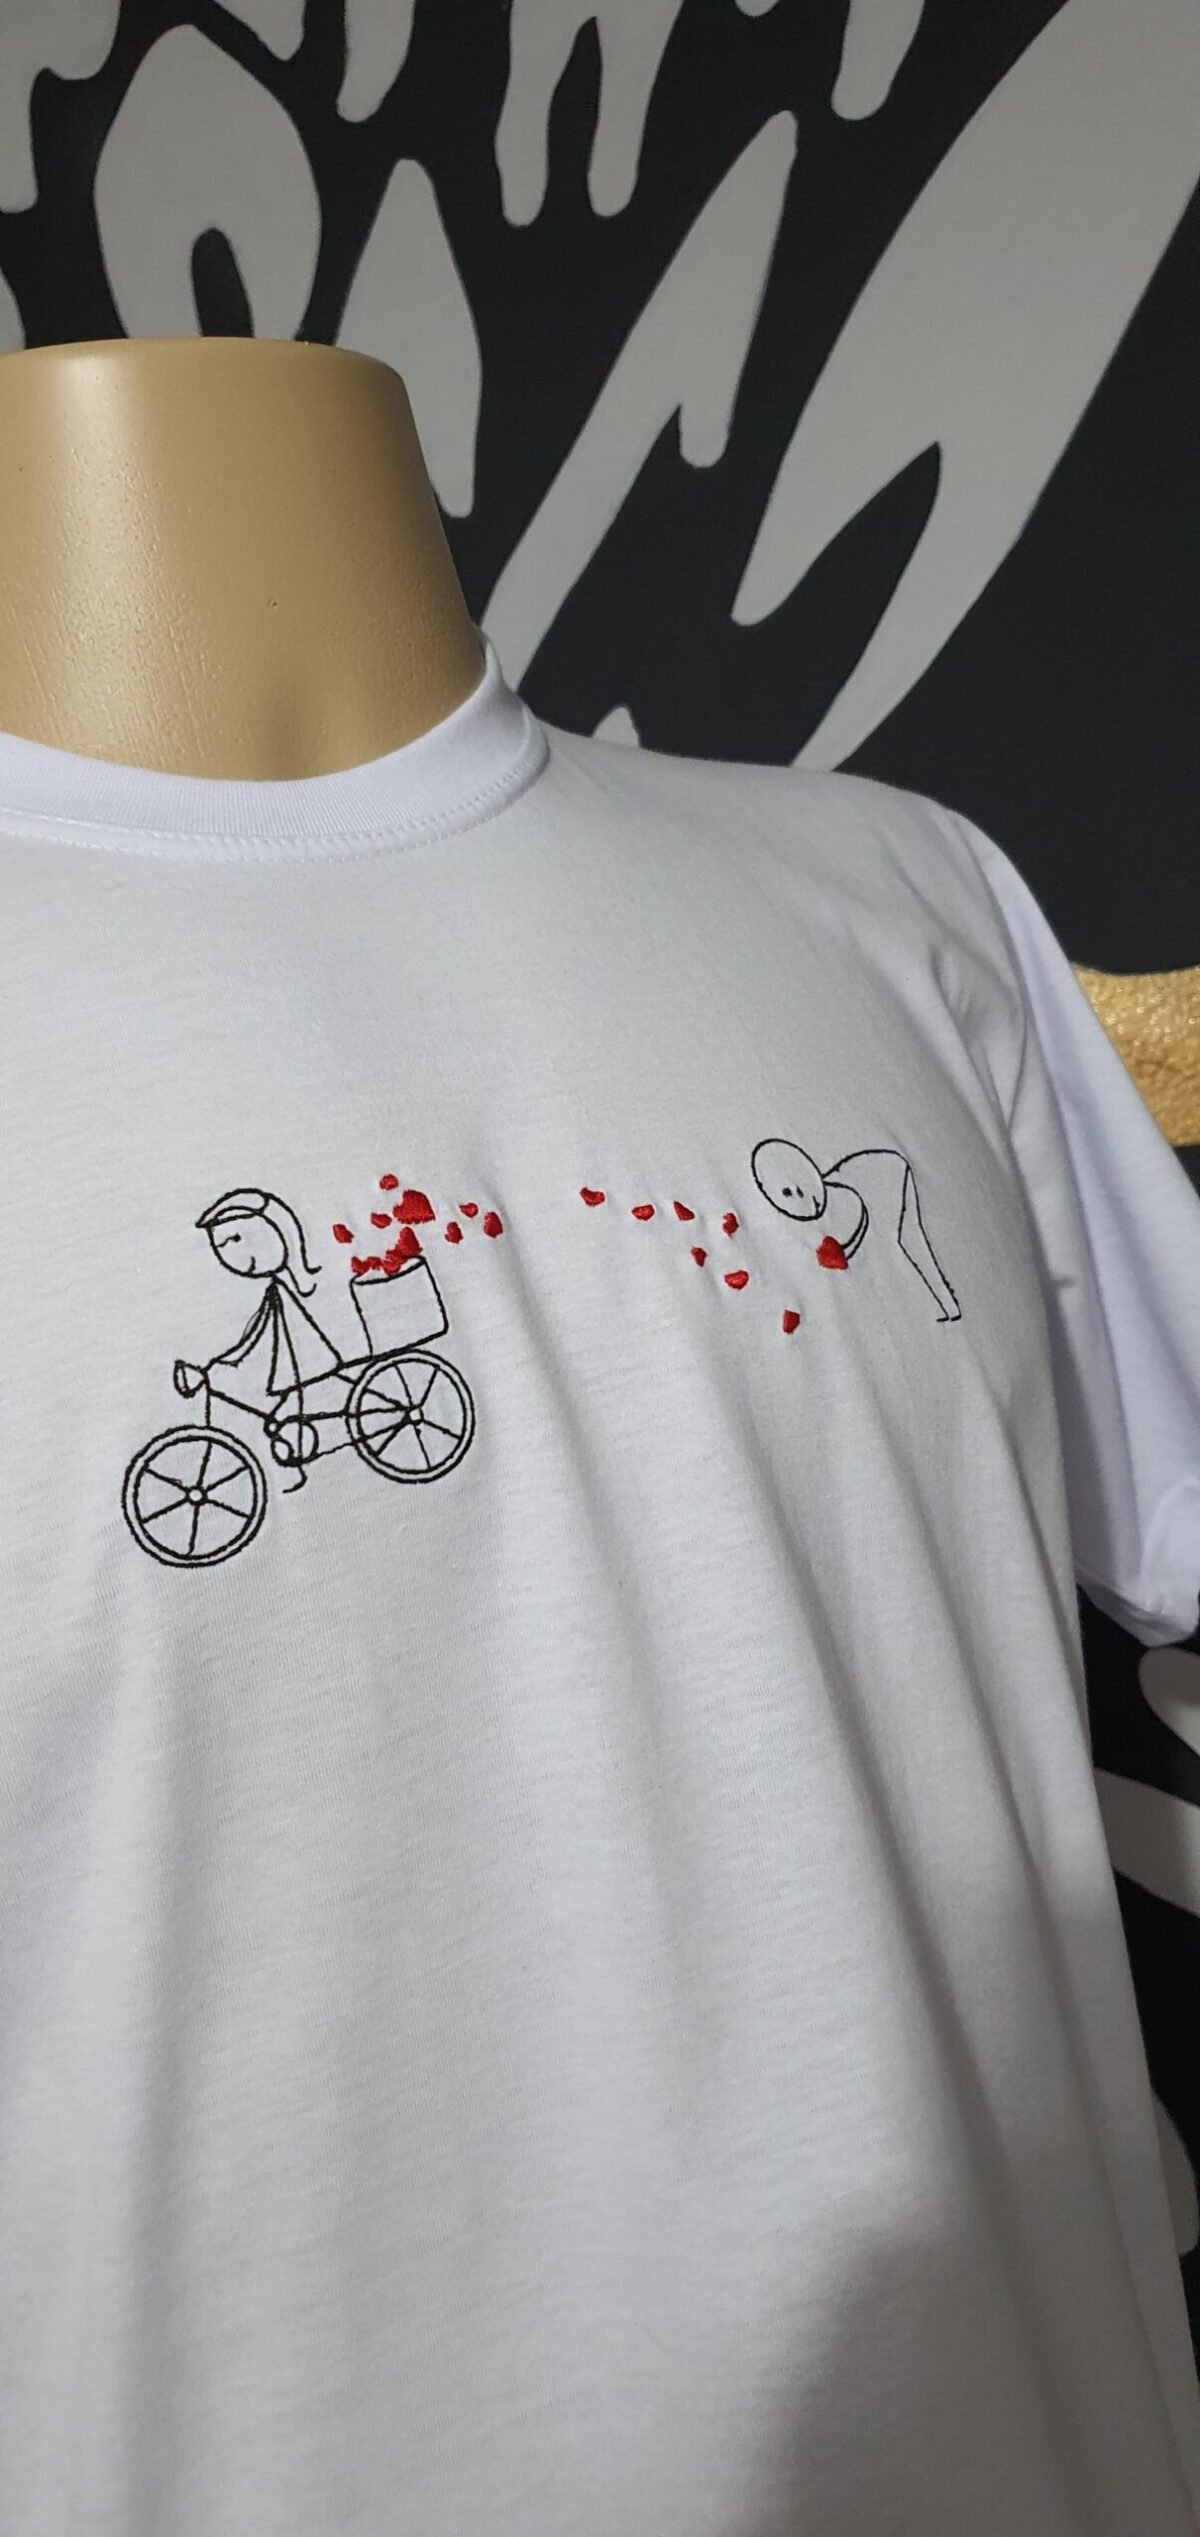 Camiseta Bordada "Caminho de Amor" by Bordado & Cia - @bordado.cia